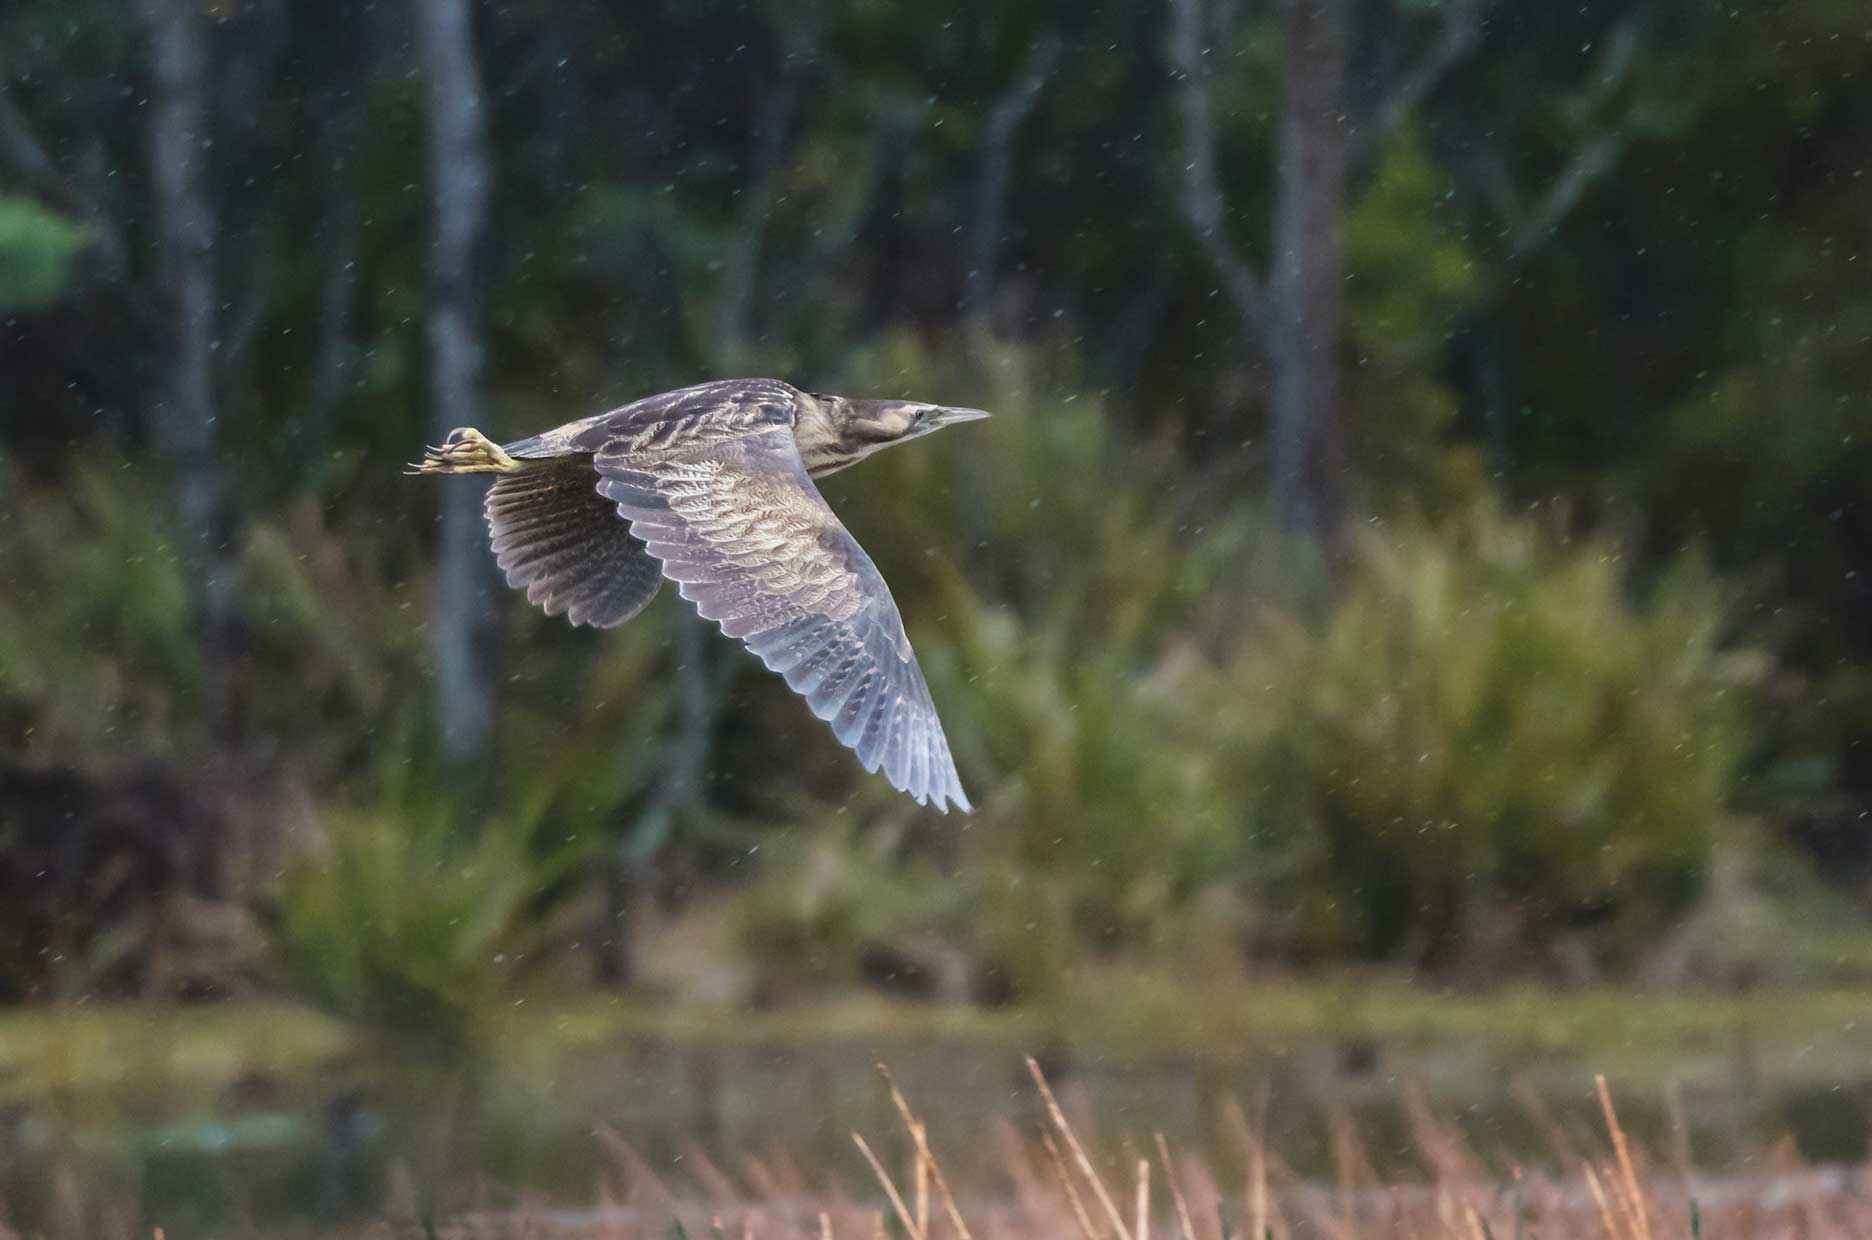 An Australasian bittern in flight over a wetland. 